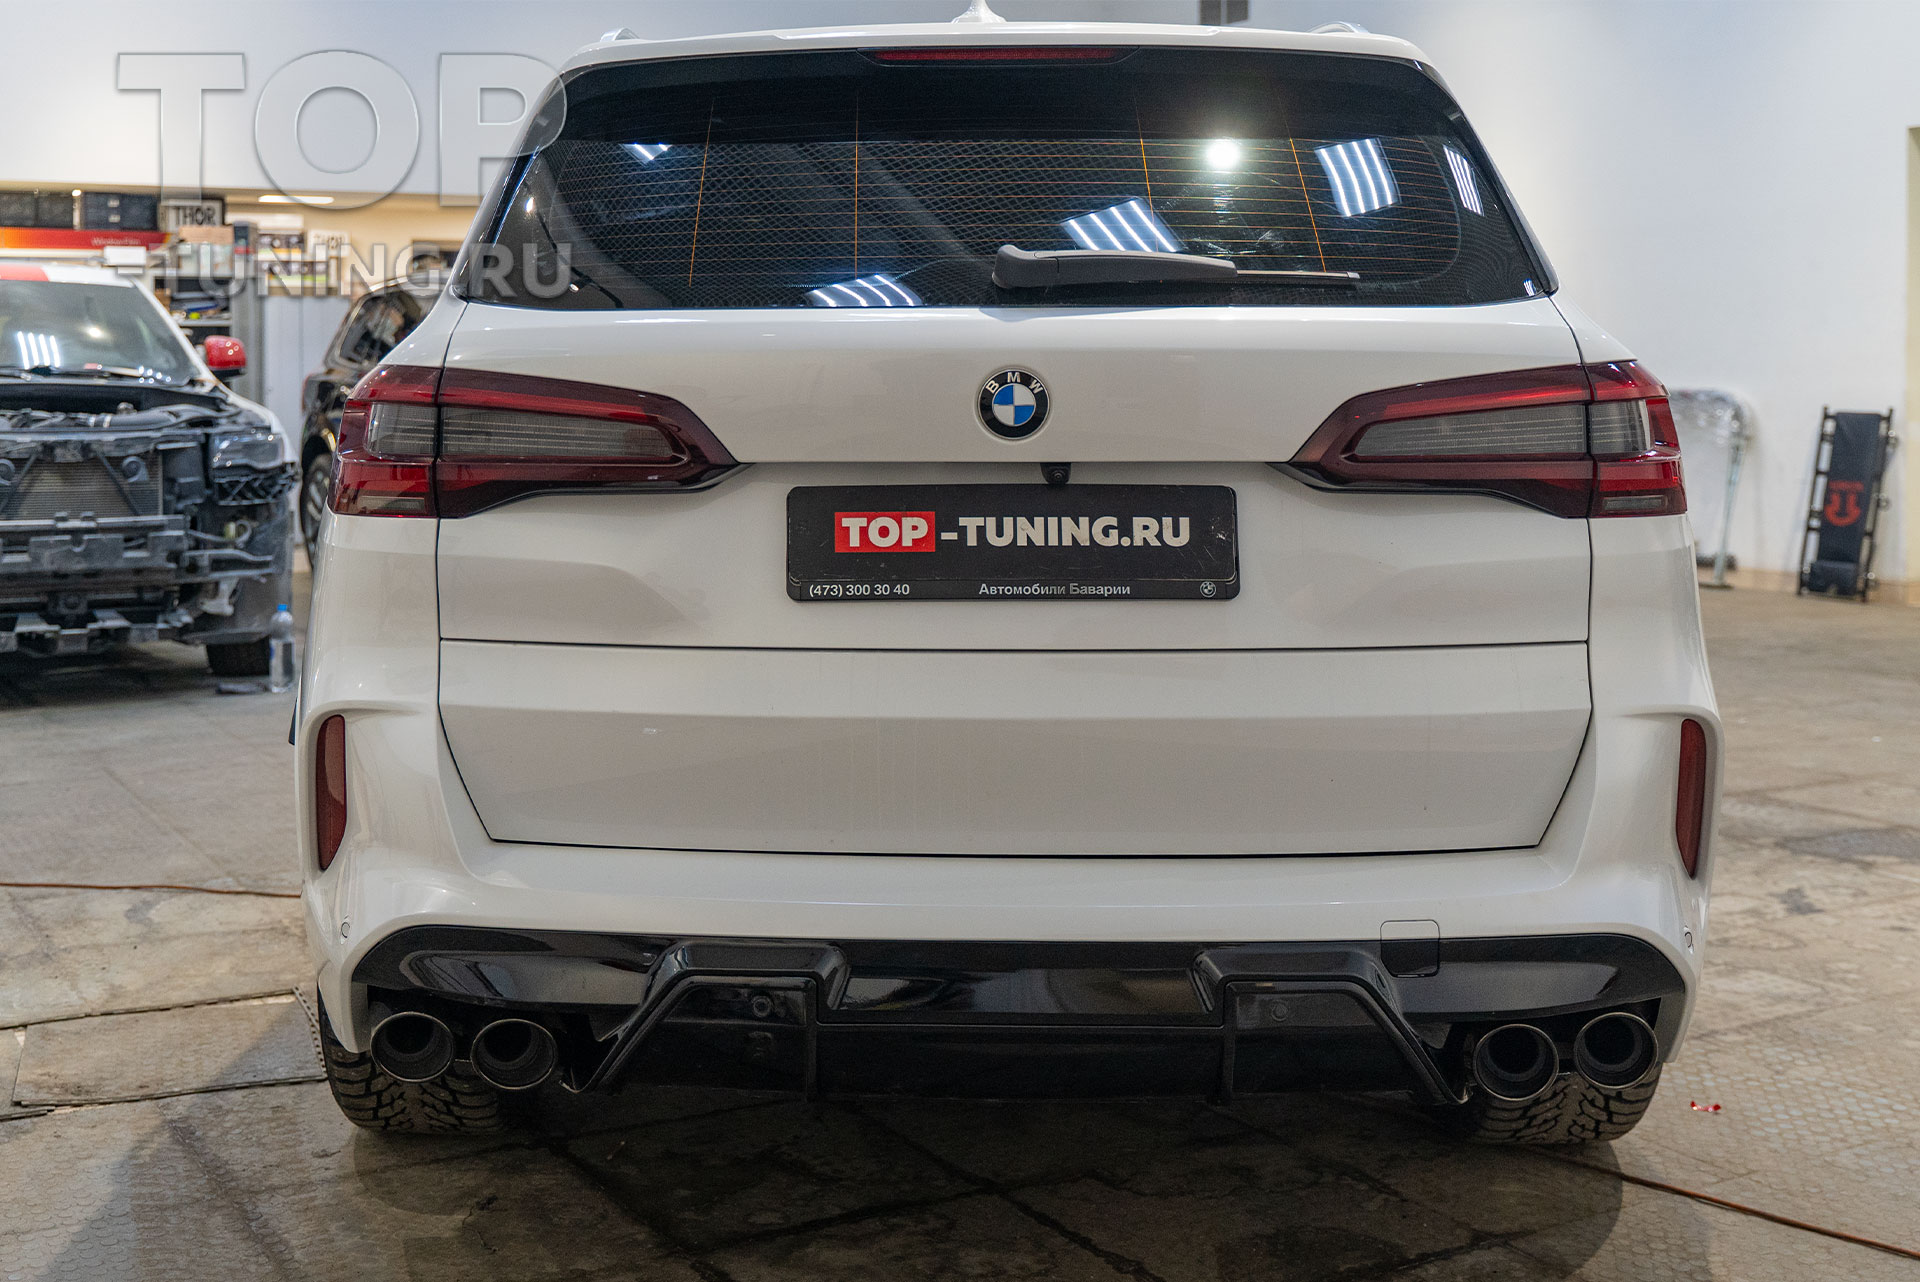 108349 Тюнинг-конверсия заводской внешности BMW X5 G05